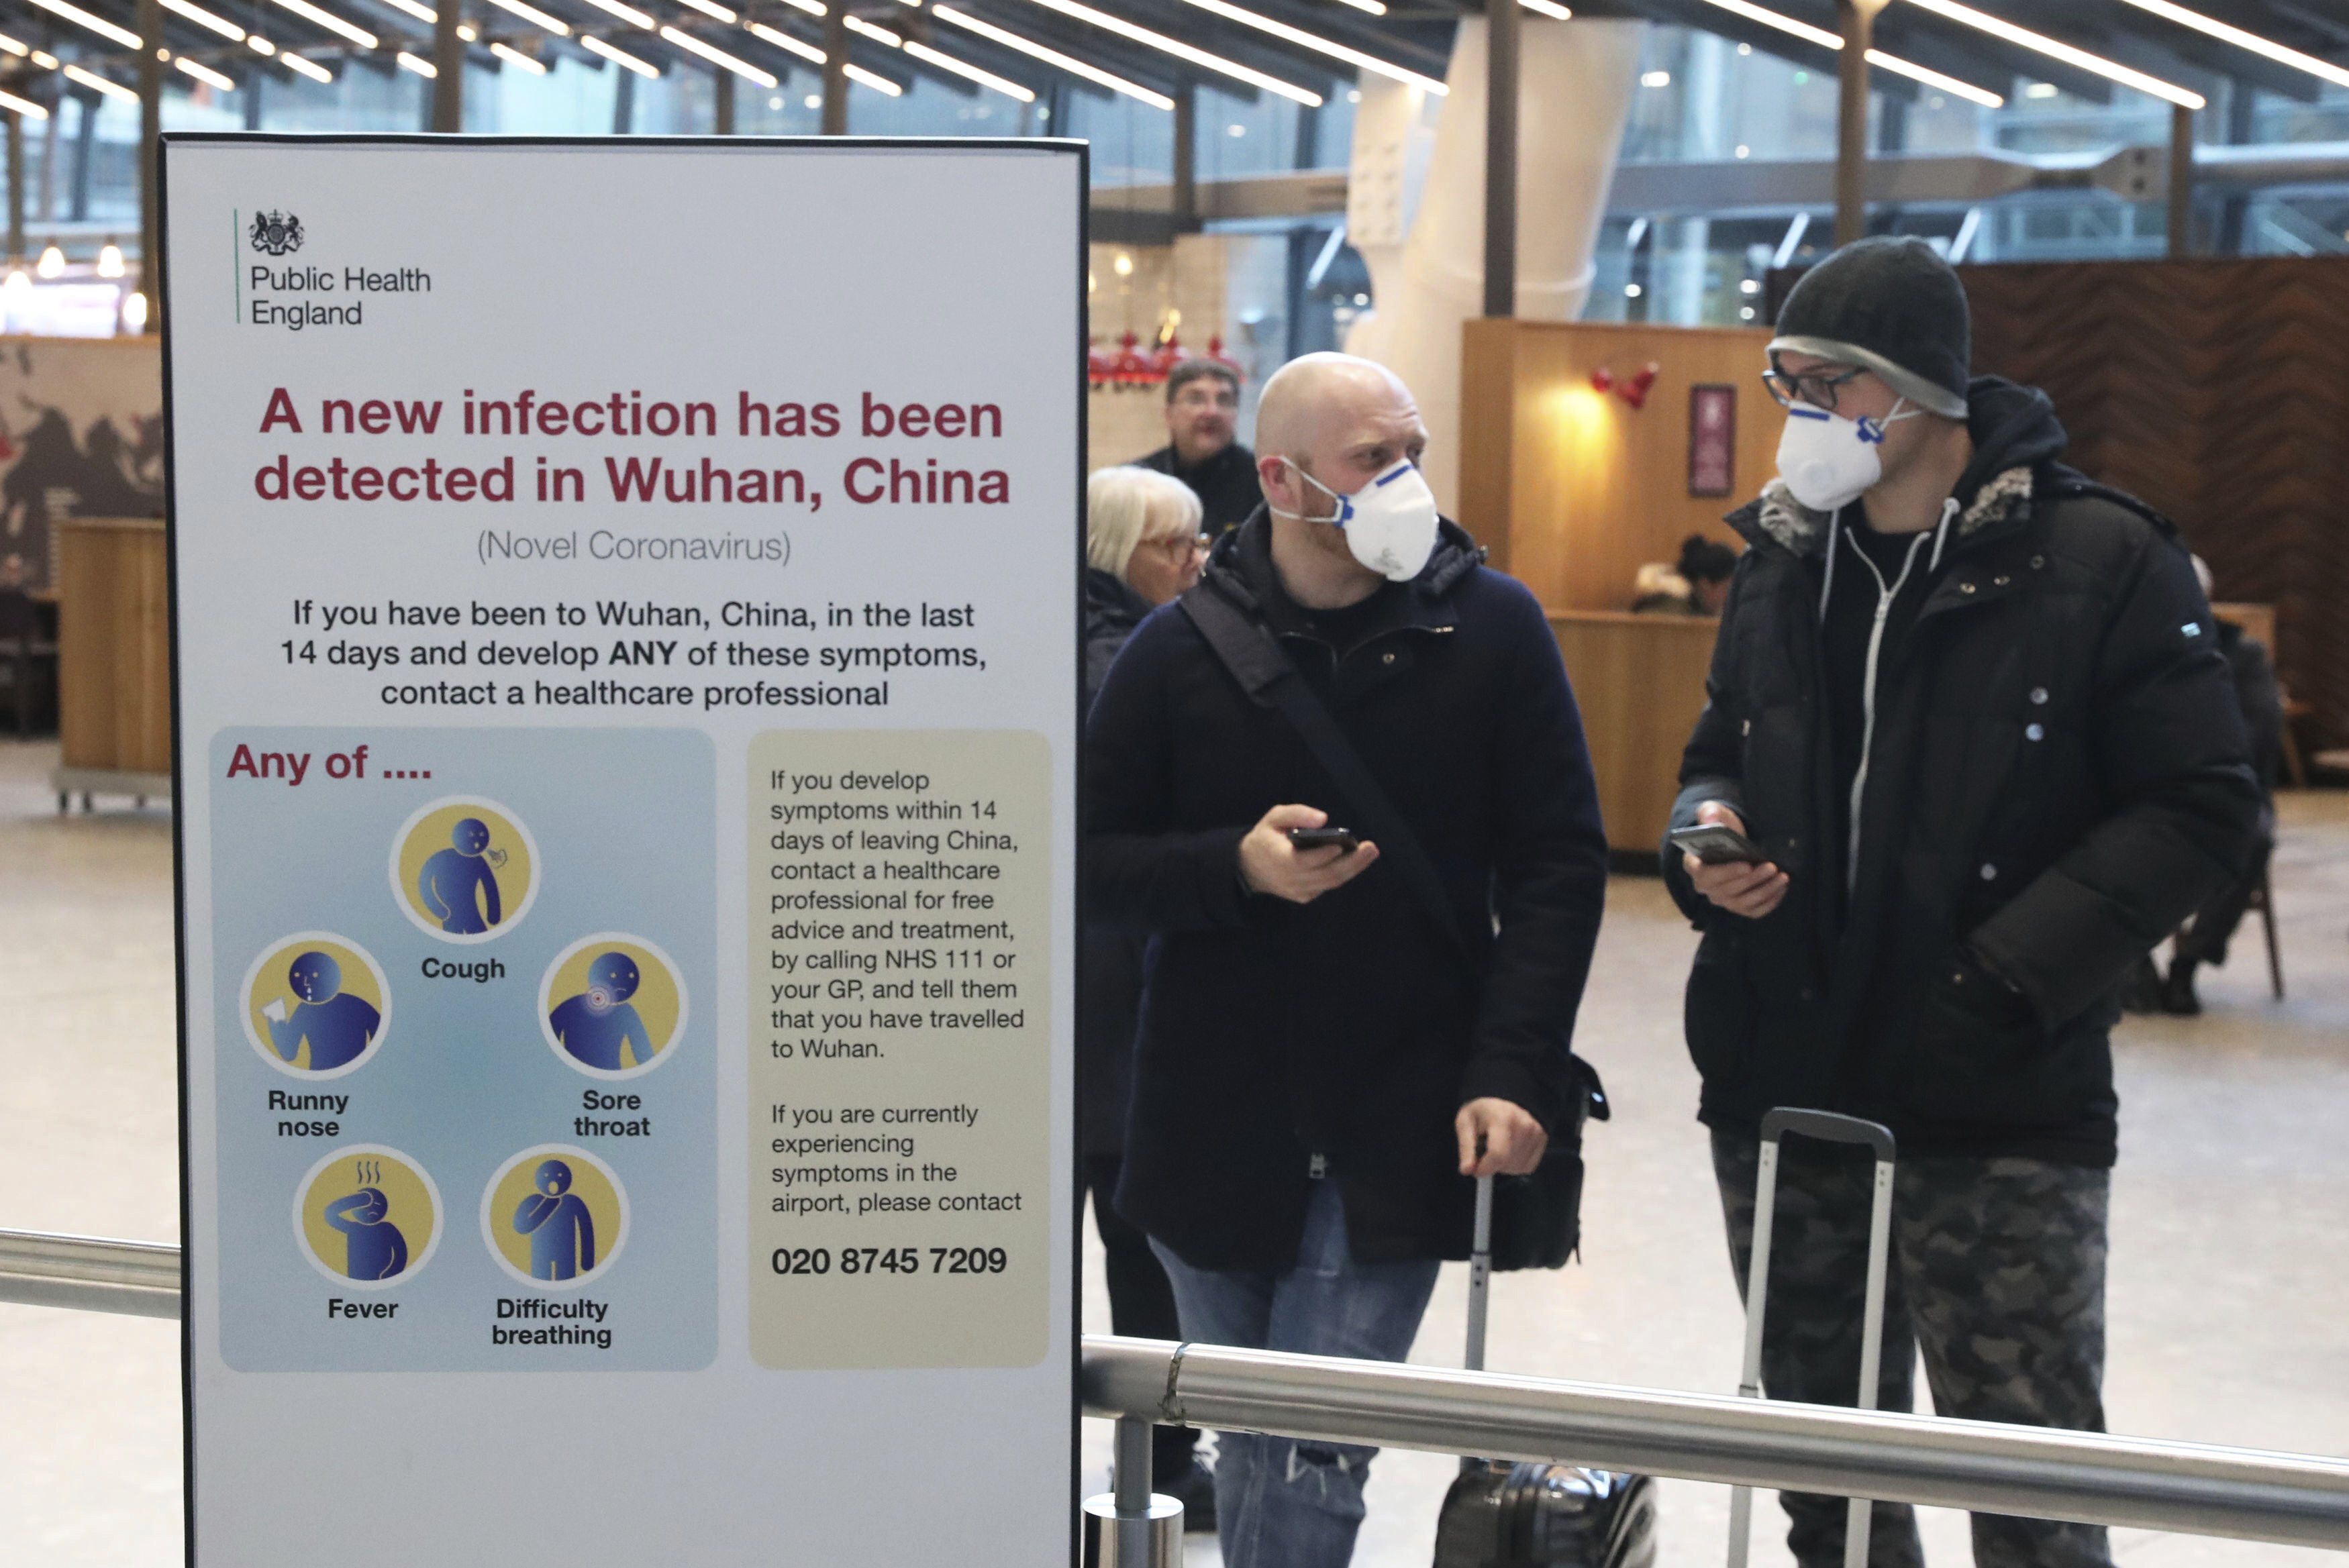 En el aeropuerto de Heathrow, en Londres, anuncian los riesgos del Coronavirus. (Foto AP)